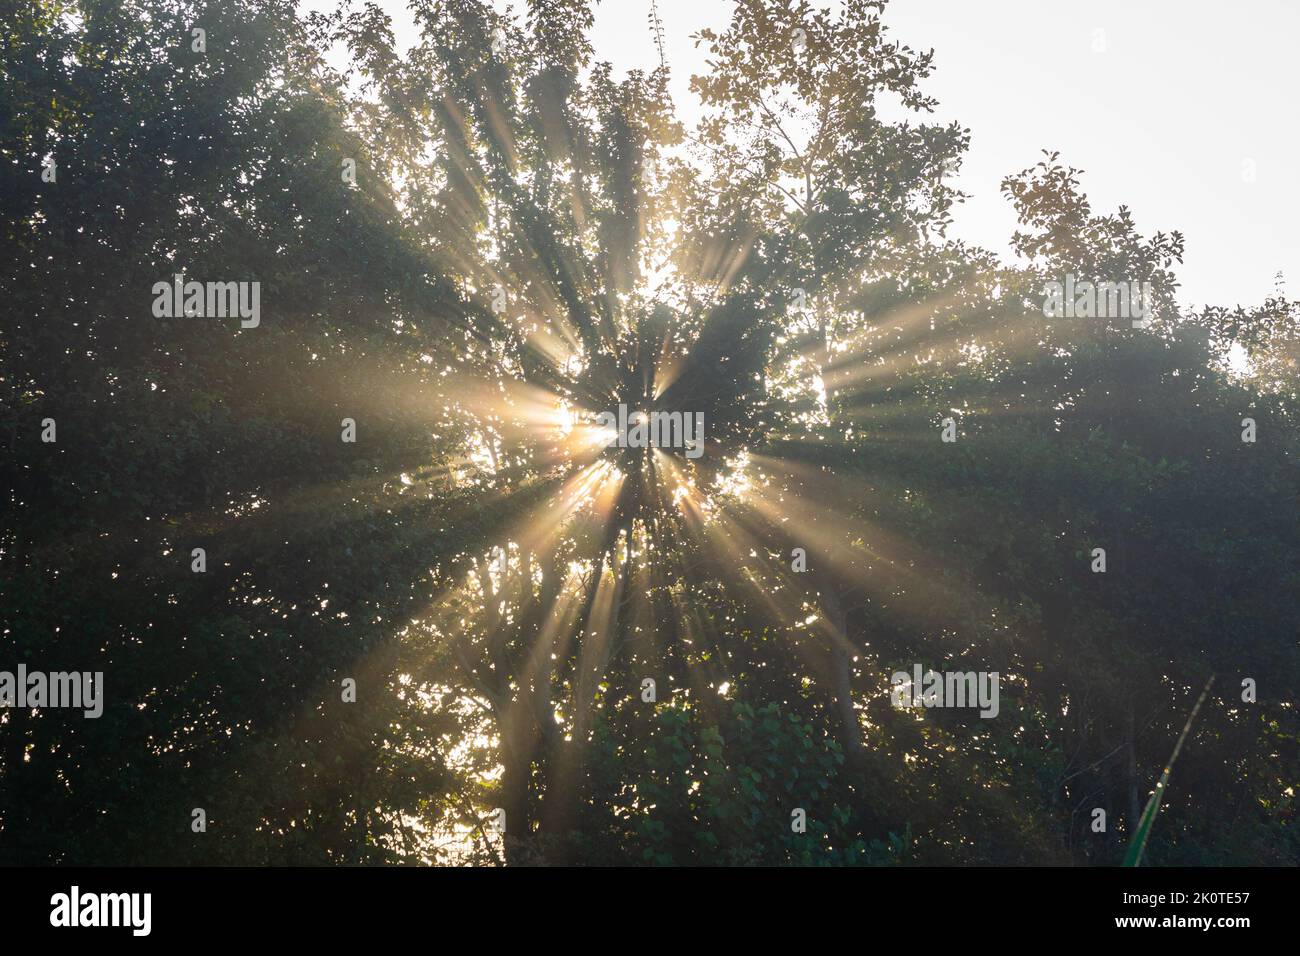 Le soleil brille à travers les feuilles d'un arbre, créant un beau motif divergent Banque D'Images